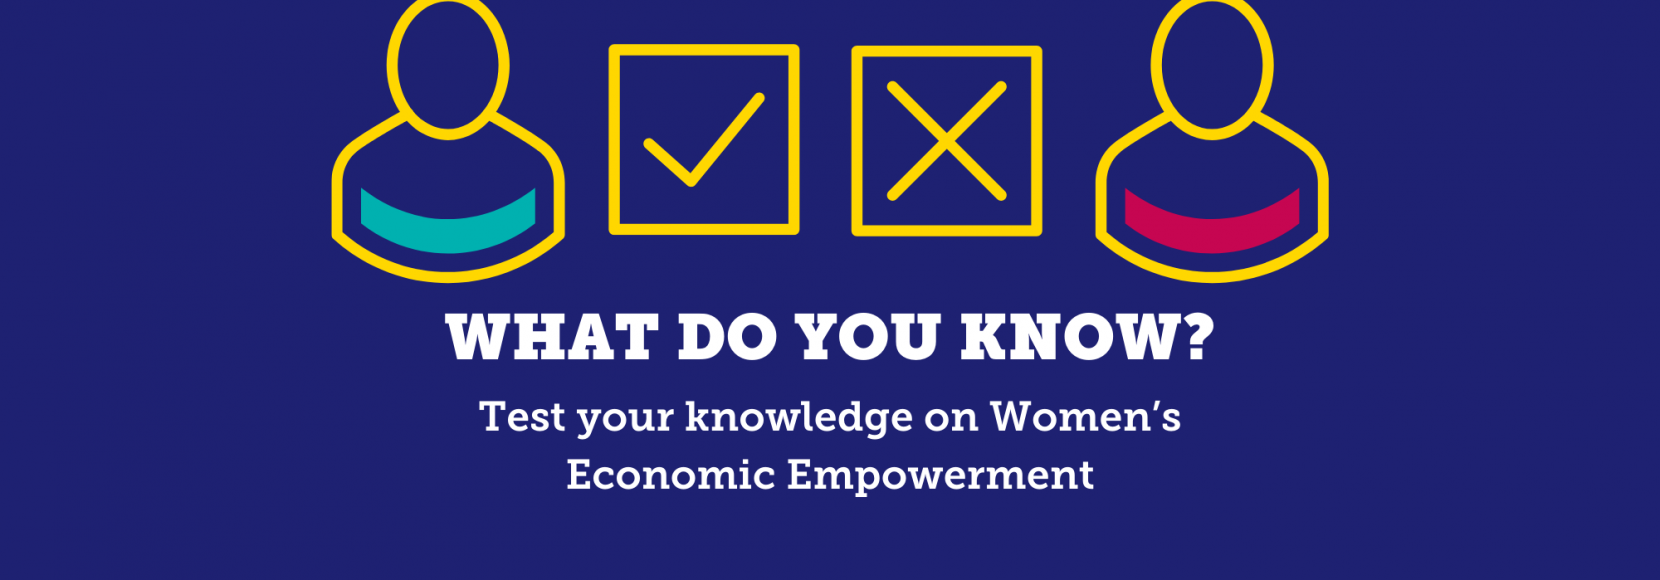 TechnoServe-Five-Question-Quiz-womens-economic-empowerment